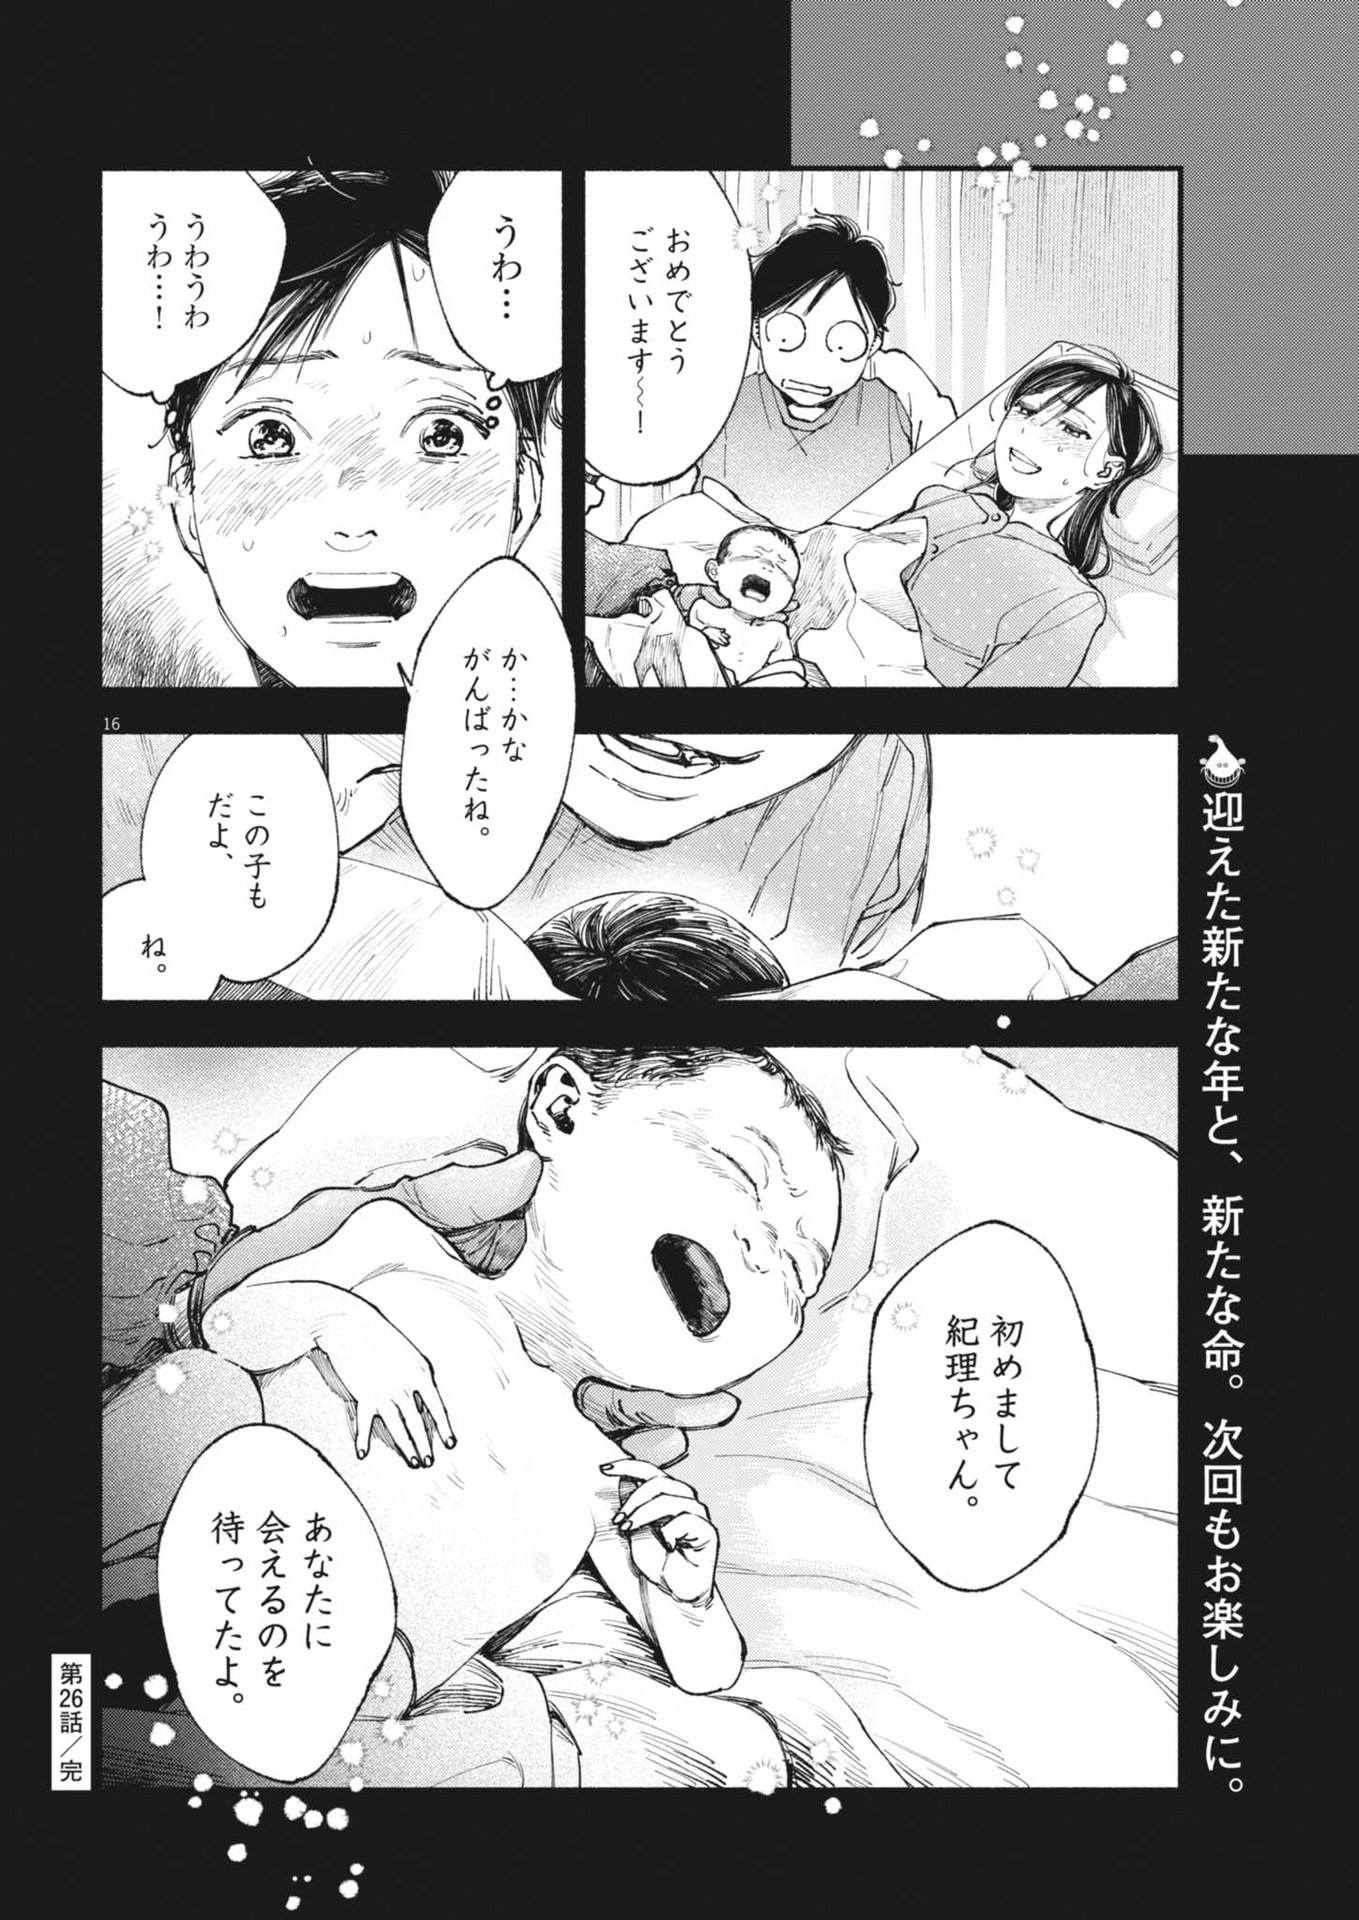 Konoyo wa Tatakau Kachi ga Aru  - Chapter 26 - Page 16